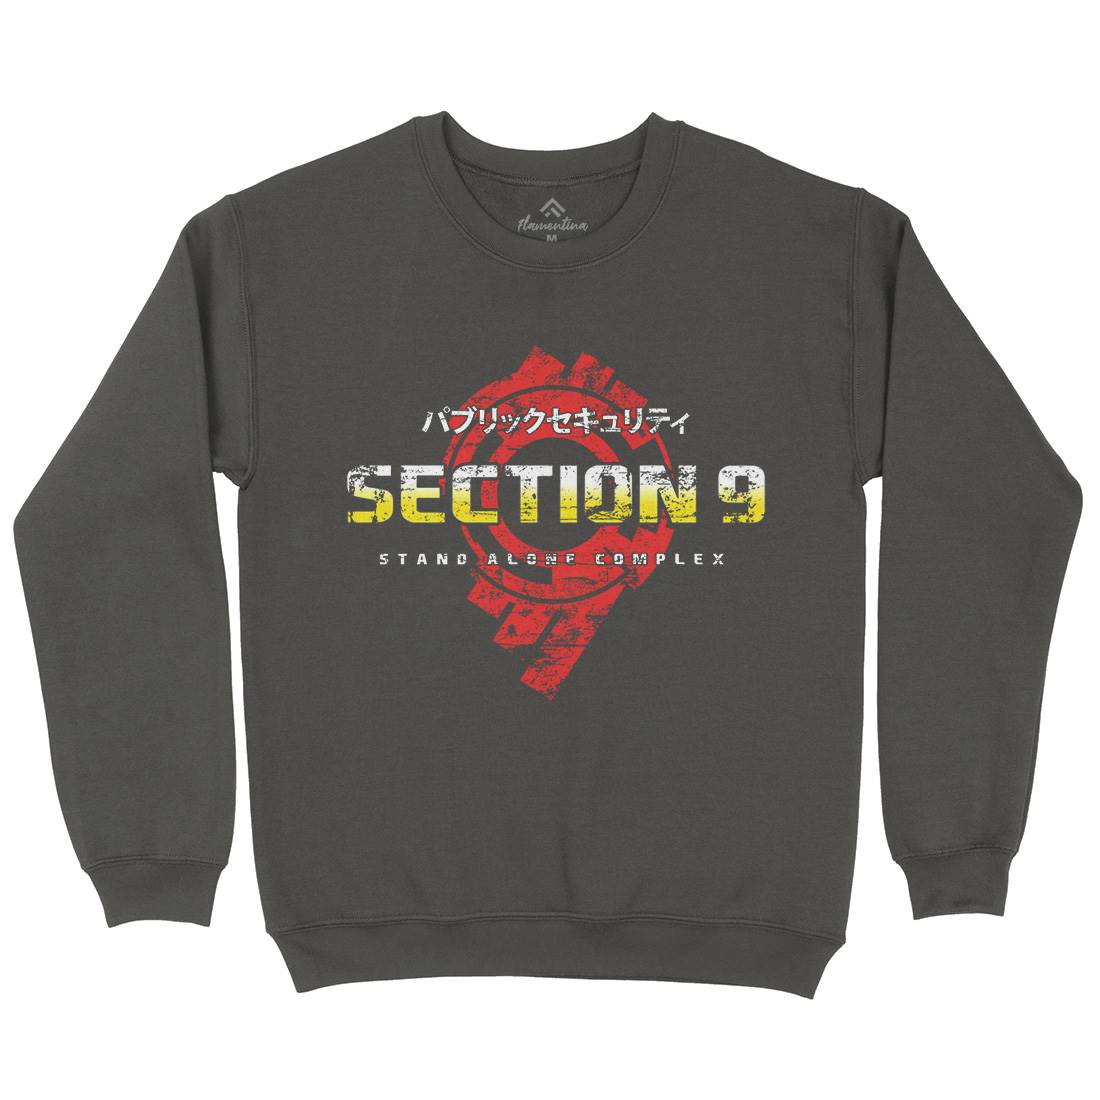 Section 9 Kids Crew Neck Sweatshirt Space D193